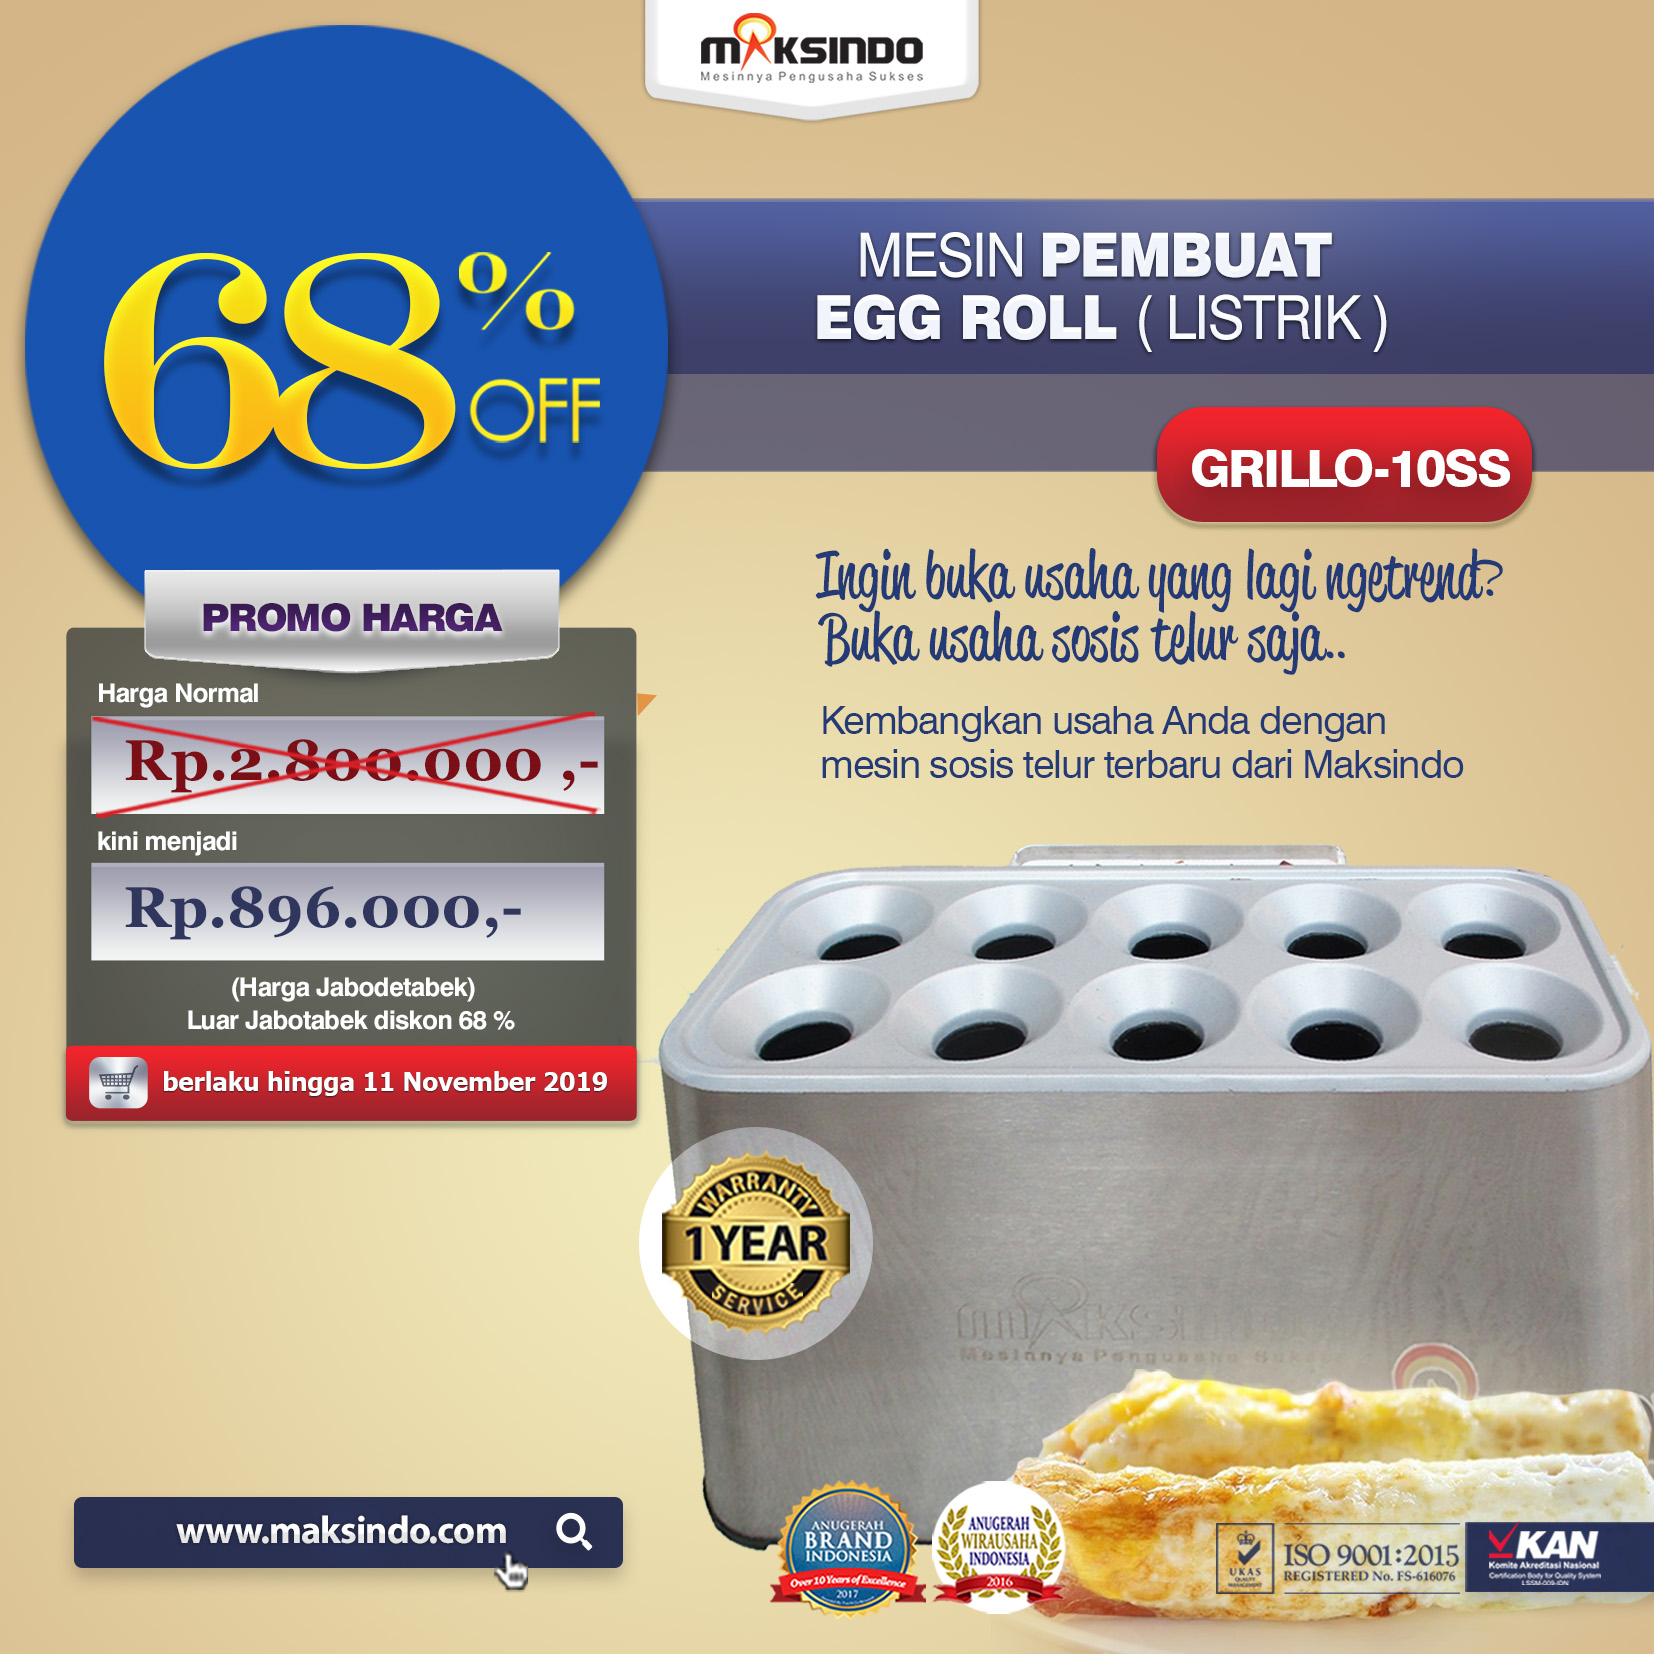 Jual Mesin Pembuat Egg Roll (Listrik) GRILLO-10SS di Malang